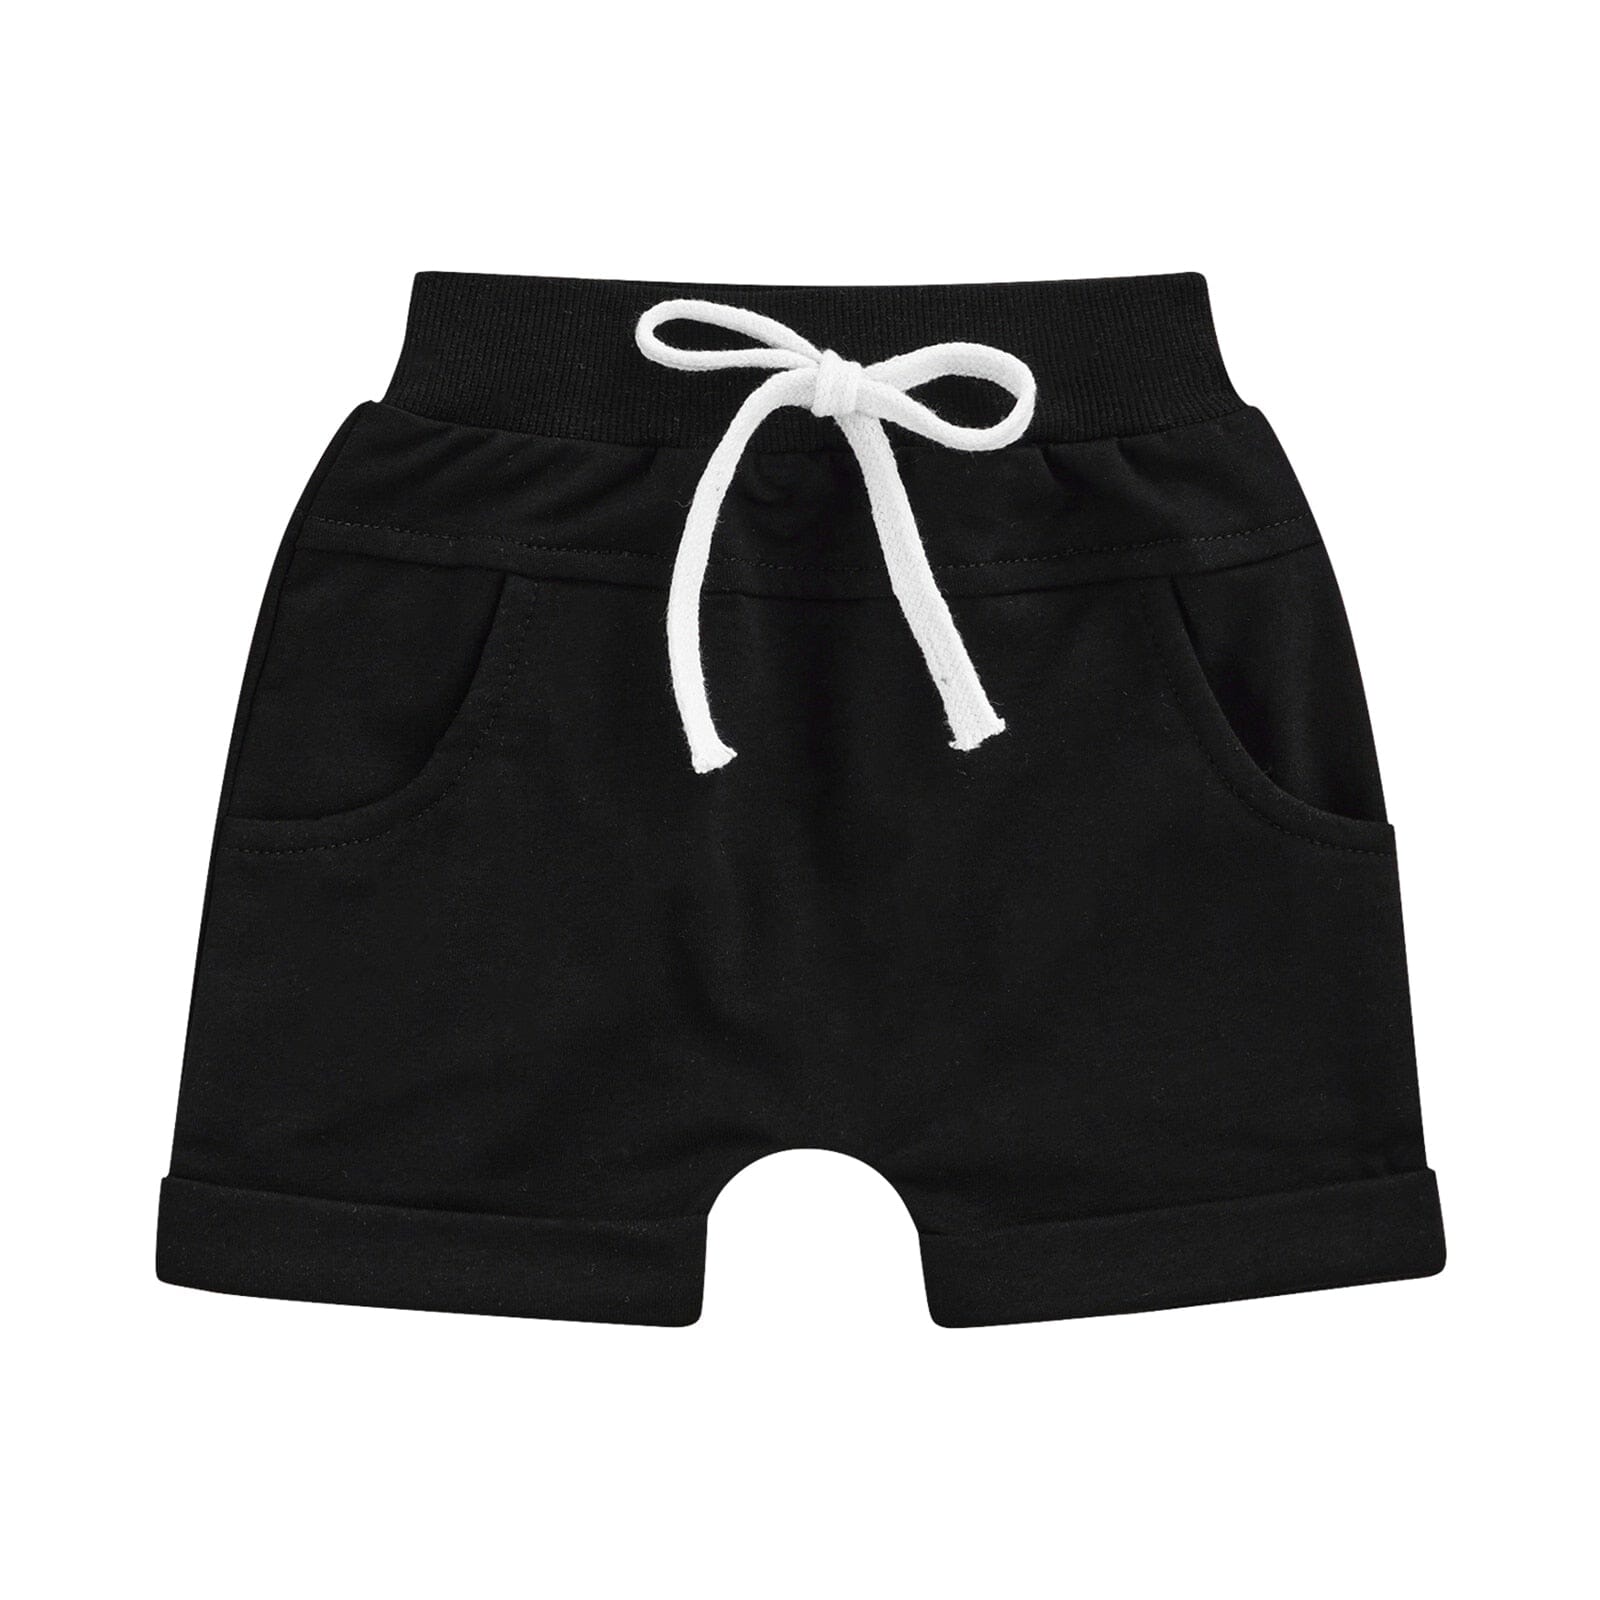 Shorts Infantil Cadarço Loja Click Certo Preto 2-3 Anos 